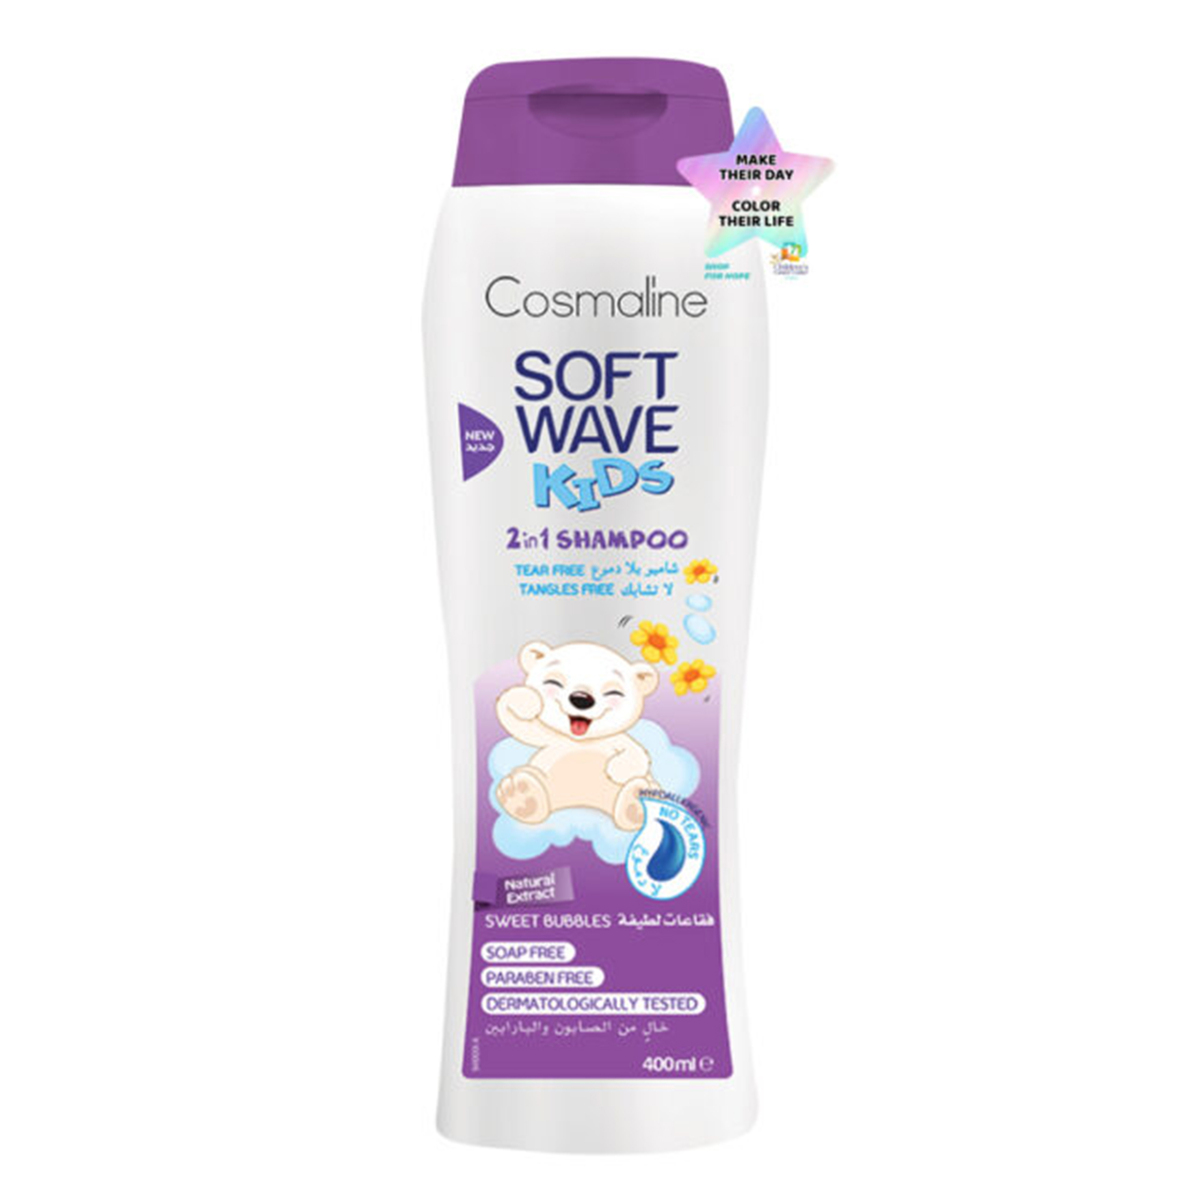 Cosmaline Soft Wave Sweet Bubbles 2in1 Kids Shampoo 400ml